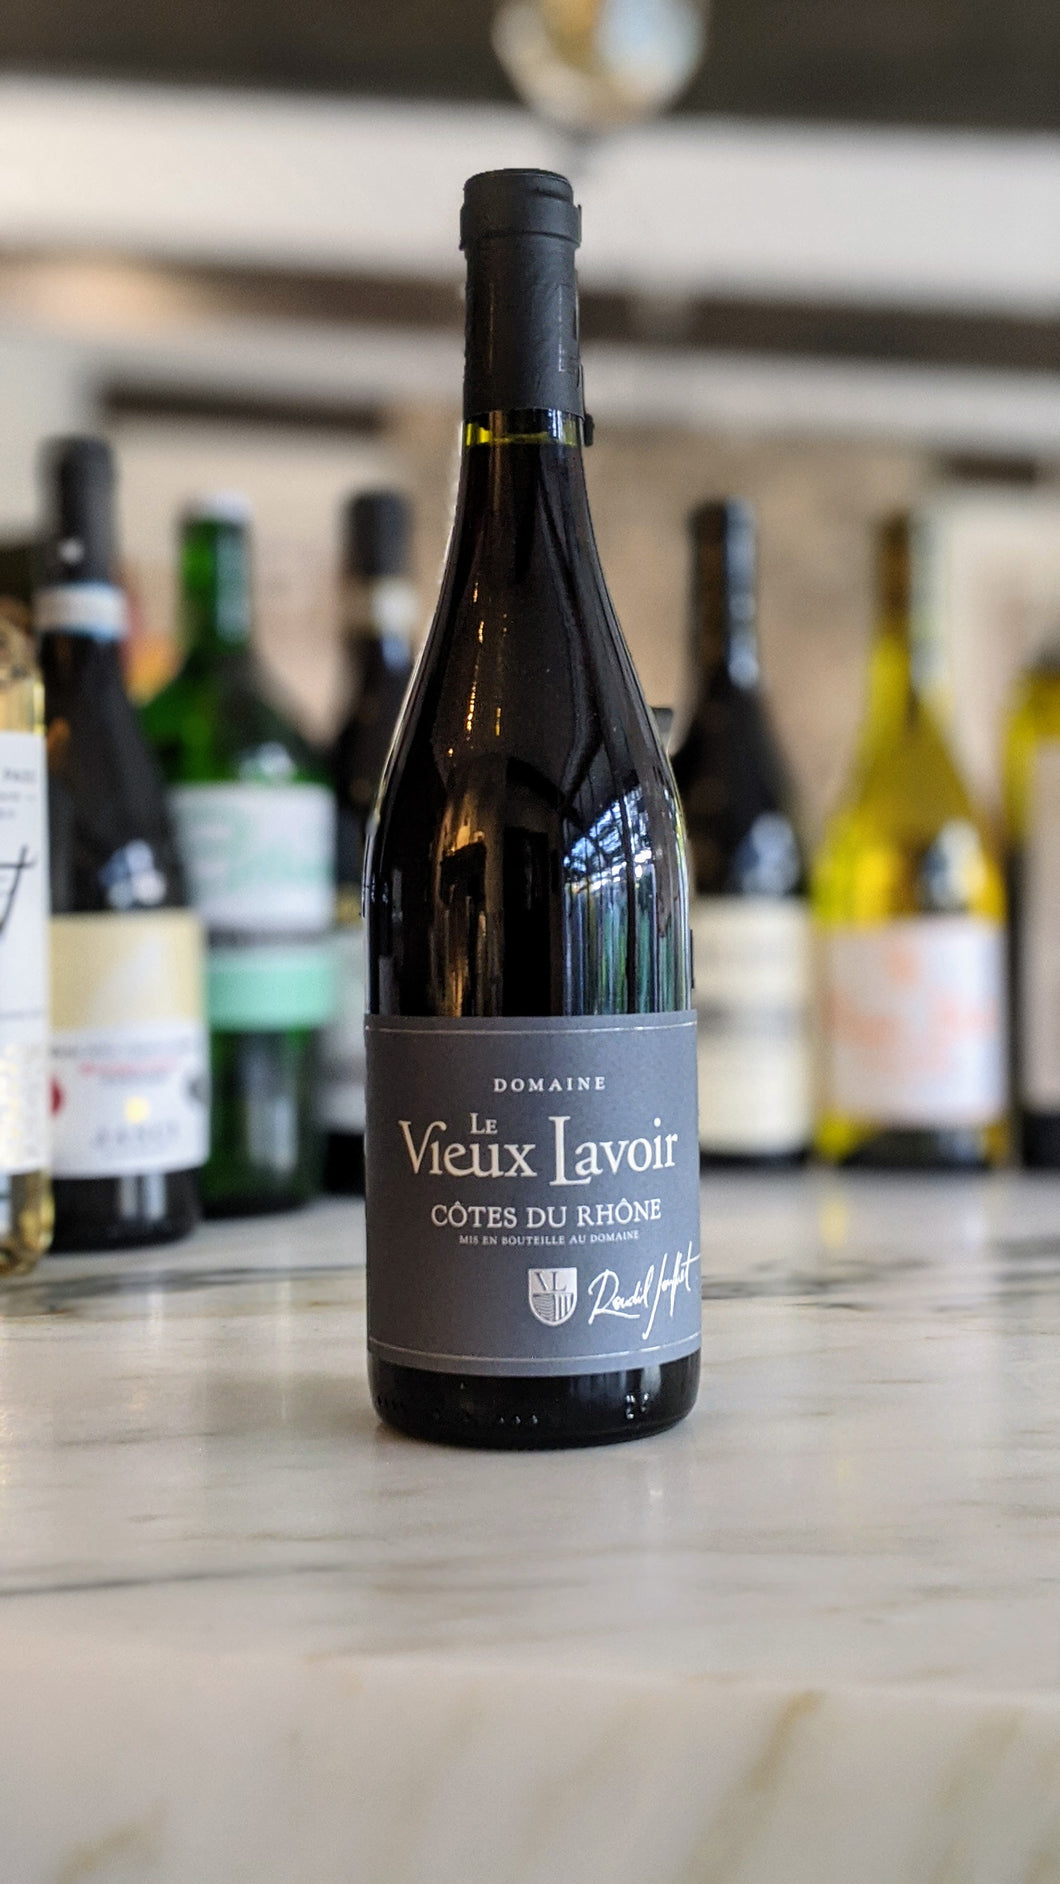 La Vieux Lavoir -- 2016 Côtes du Rhône -- Pujaut, Rhone, France